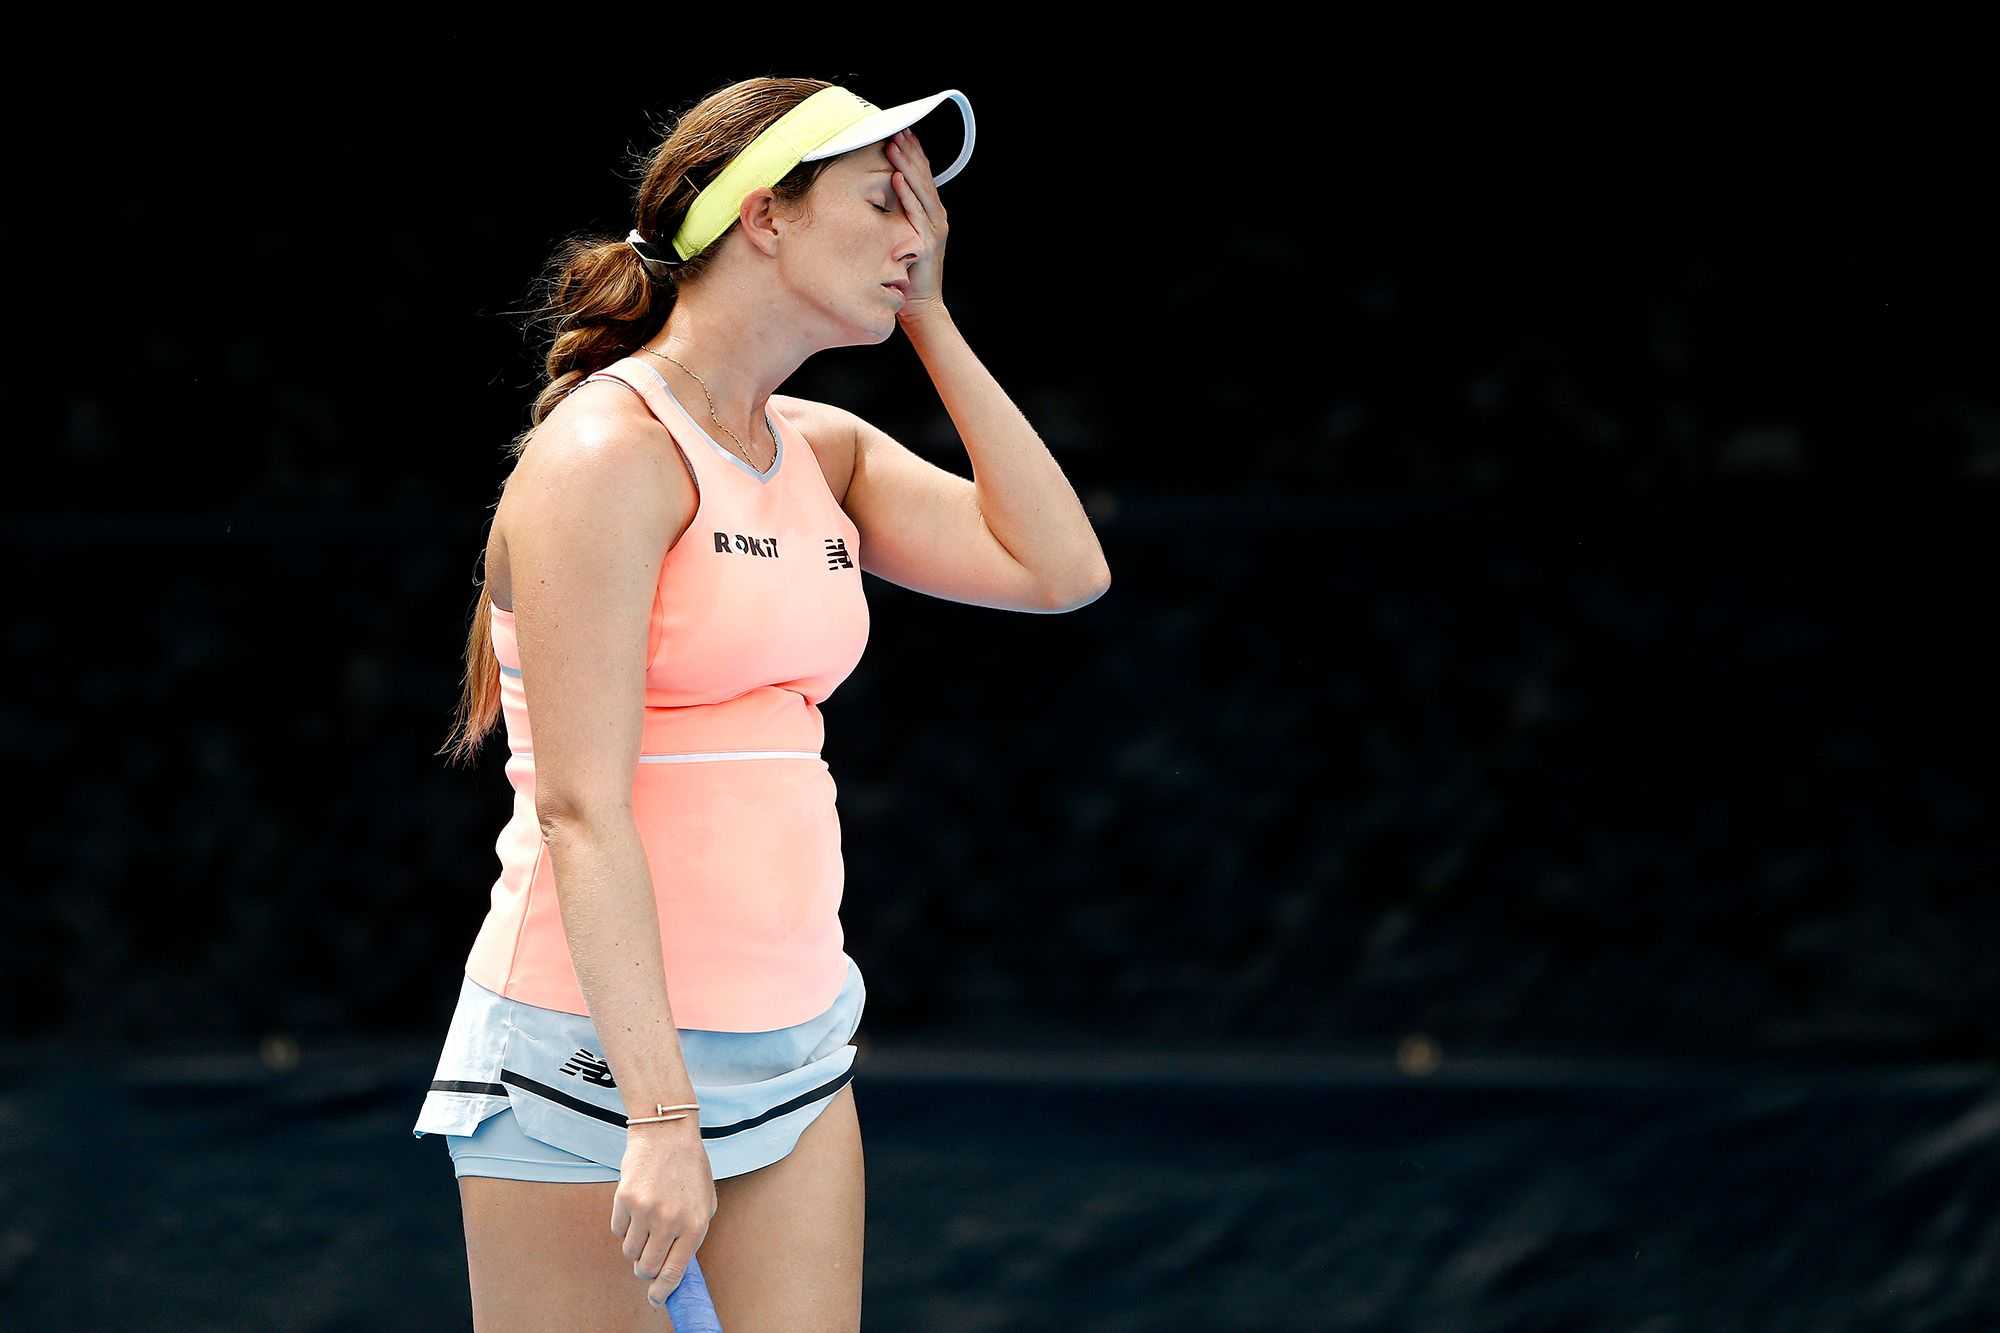 "Je ne sens pas que cela affecte ce que j'ai dit à propos de l'US Open" - Danielle Collins se défend après son renvoi du tournoi de tennis